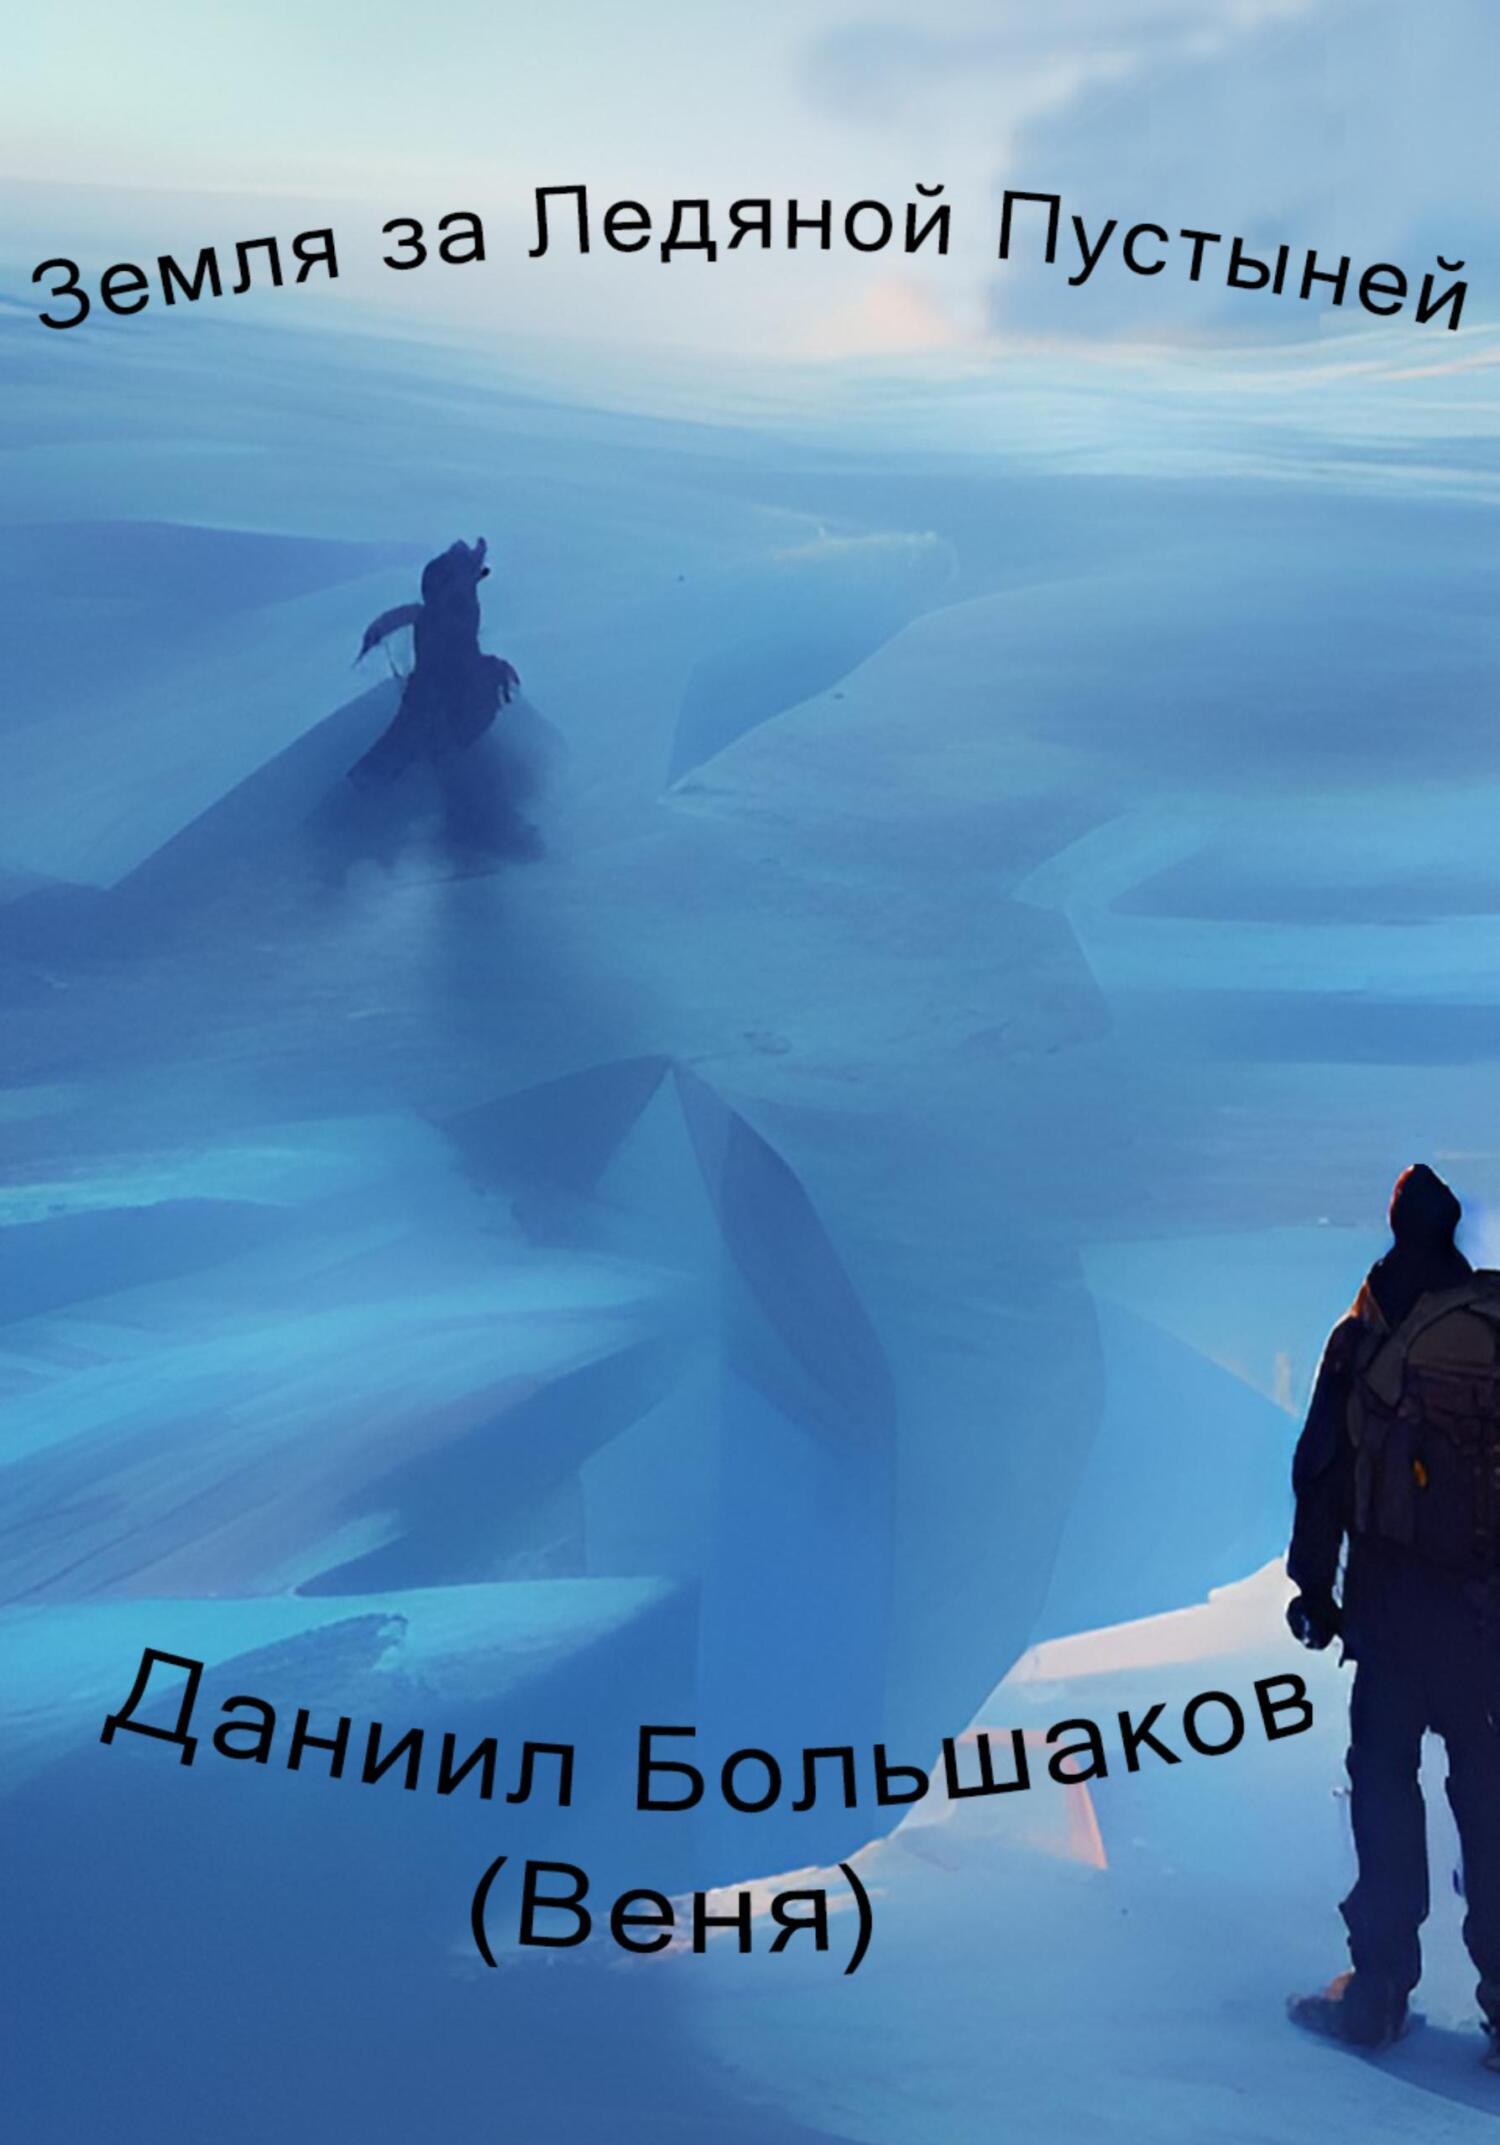 Земля за ледяной пустыней - Даниил Дмитриевич Большаков